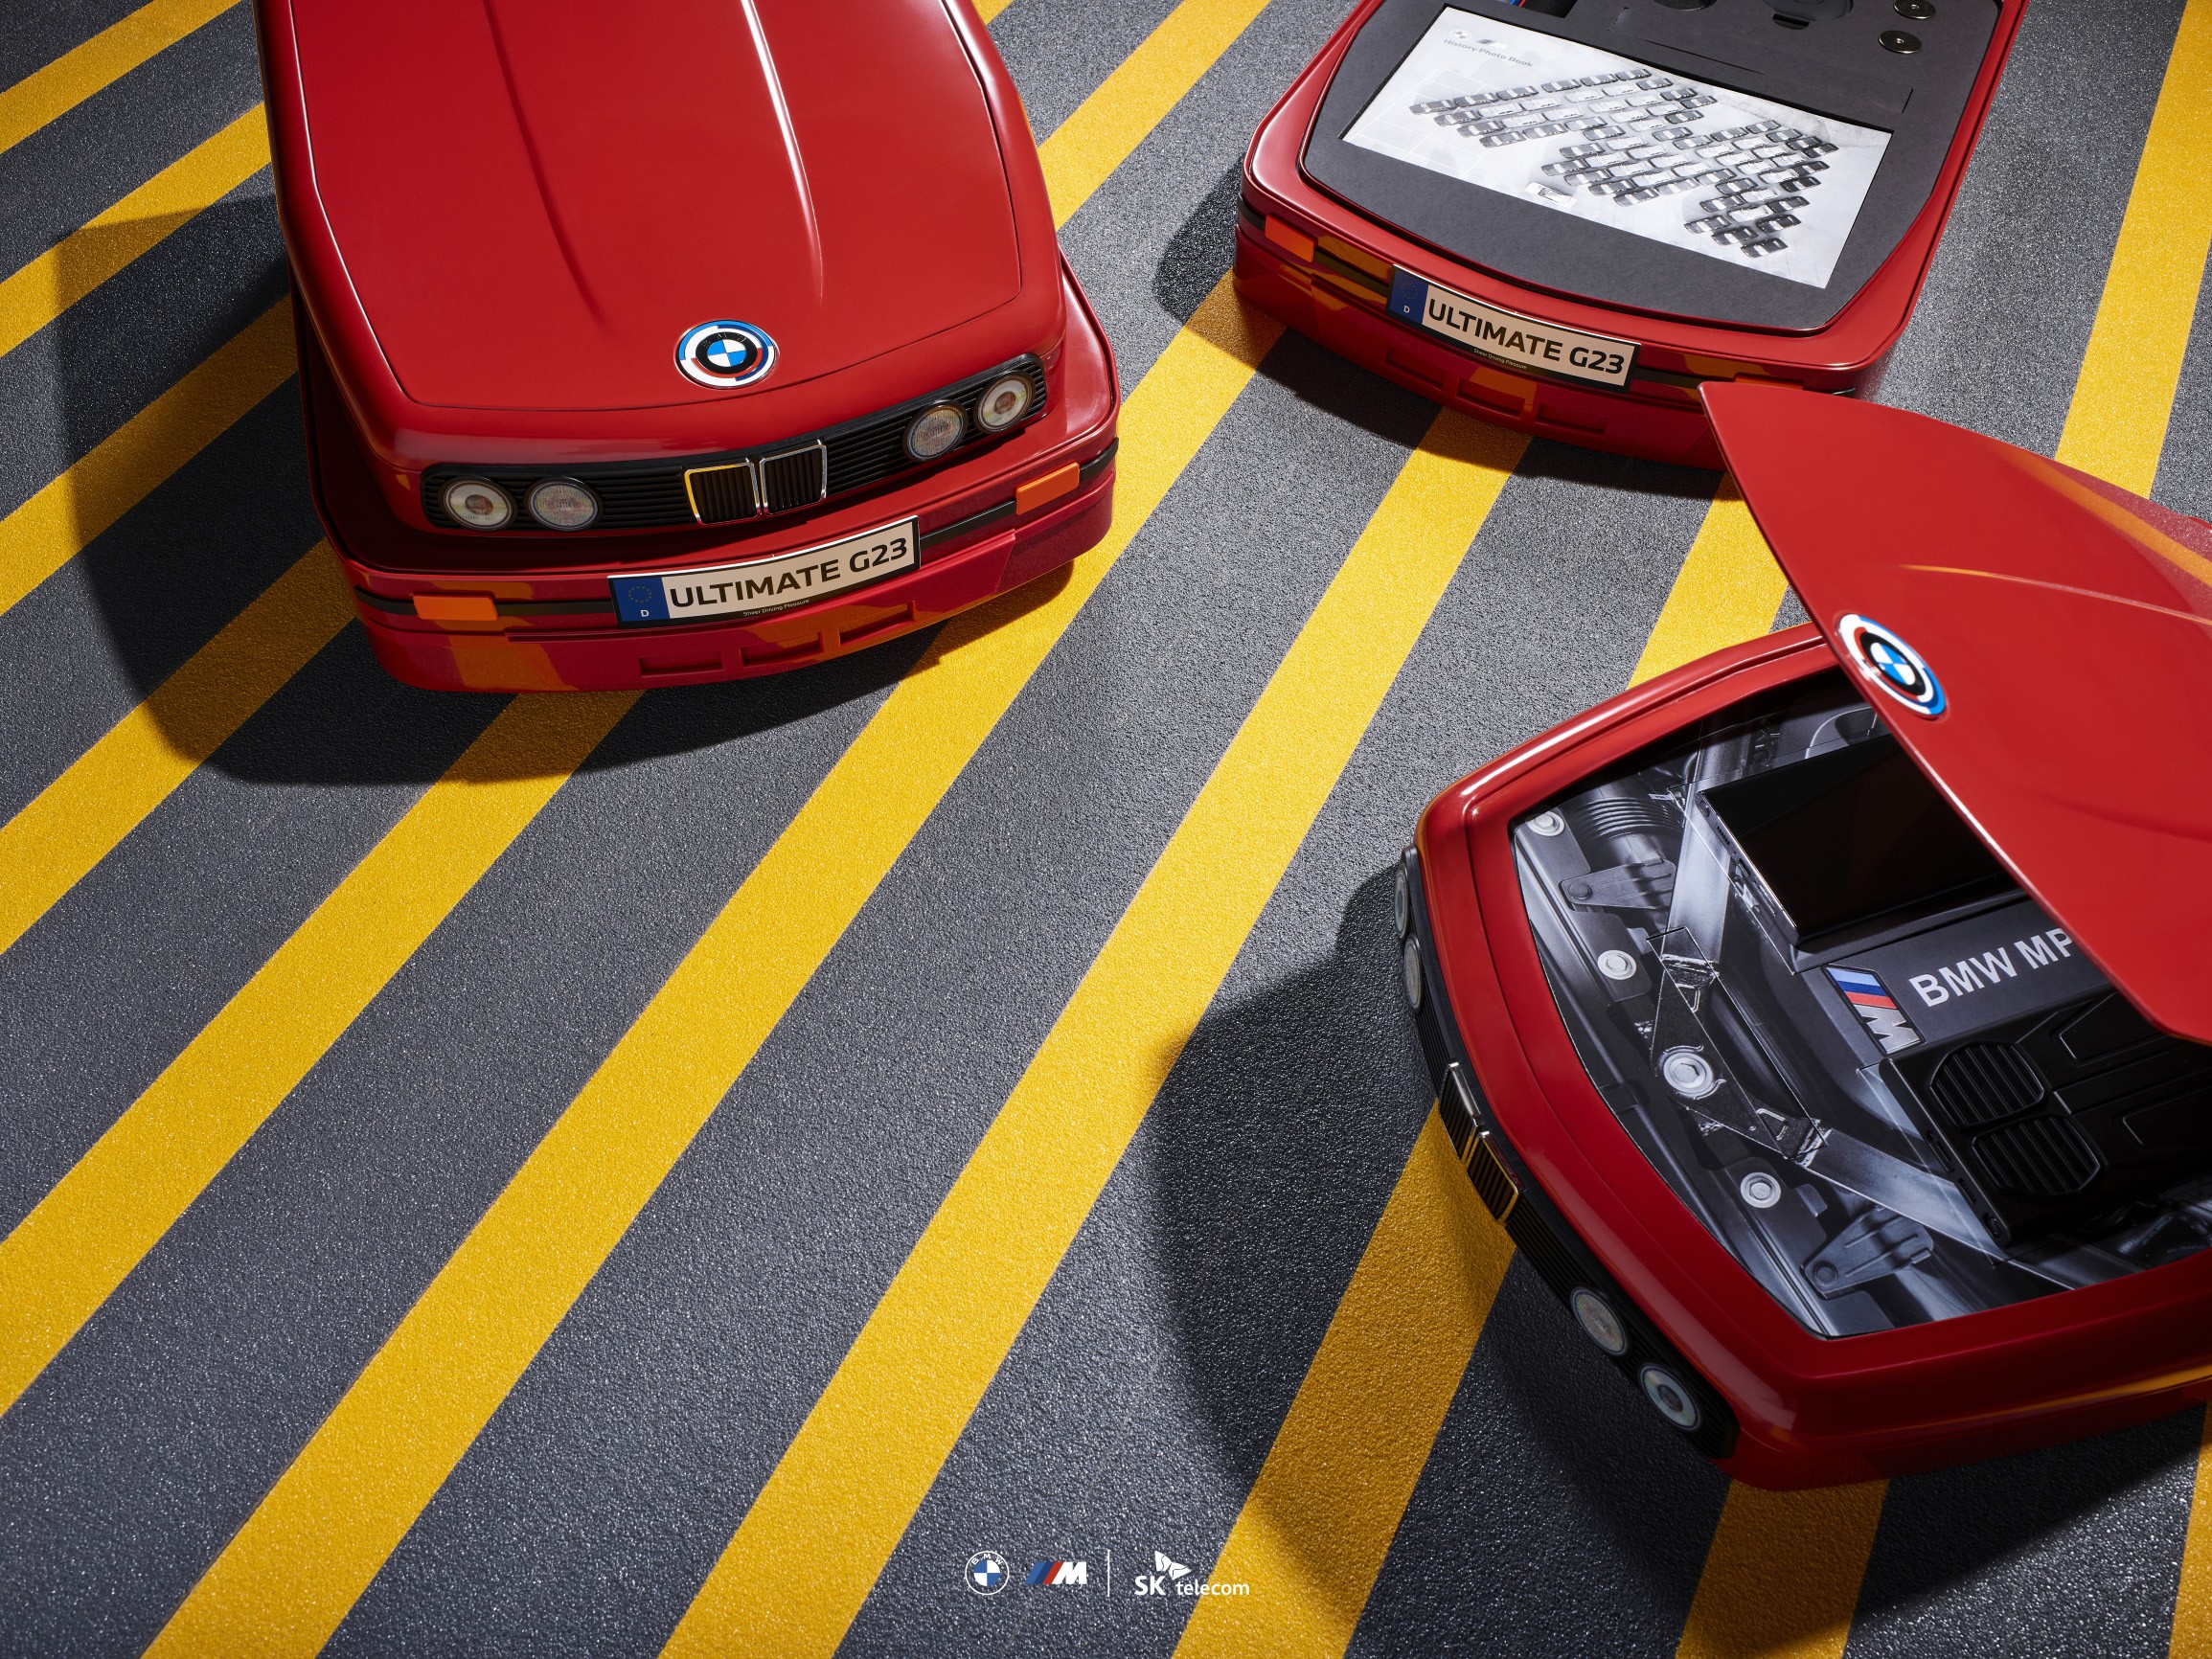 Pour les fans de la BMW M3 M30 : Samsung lance une version